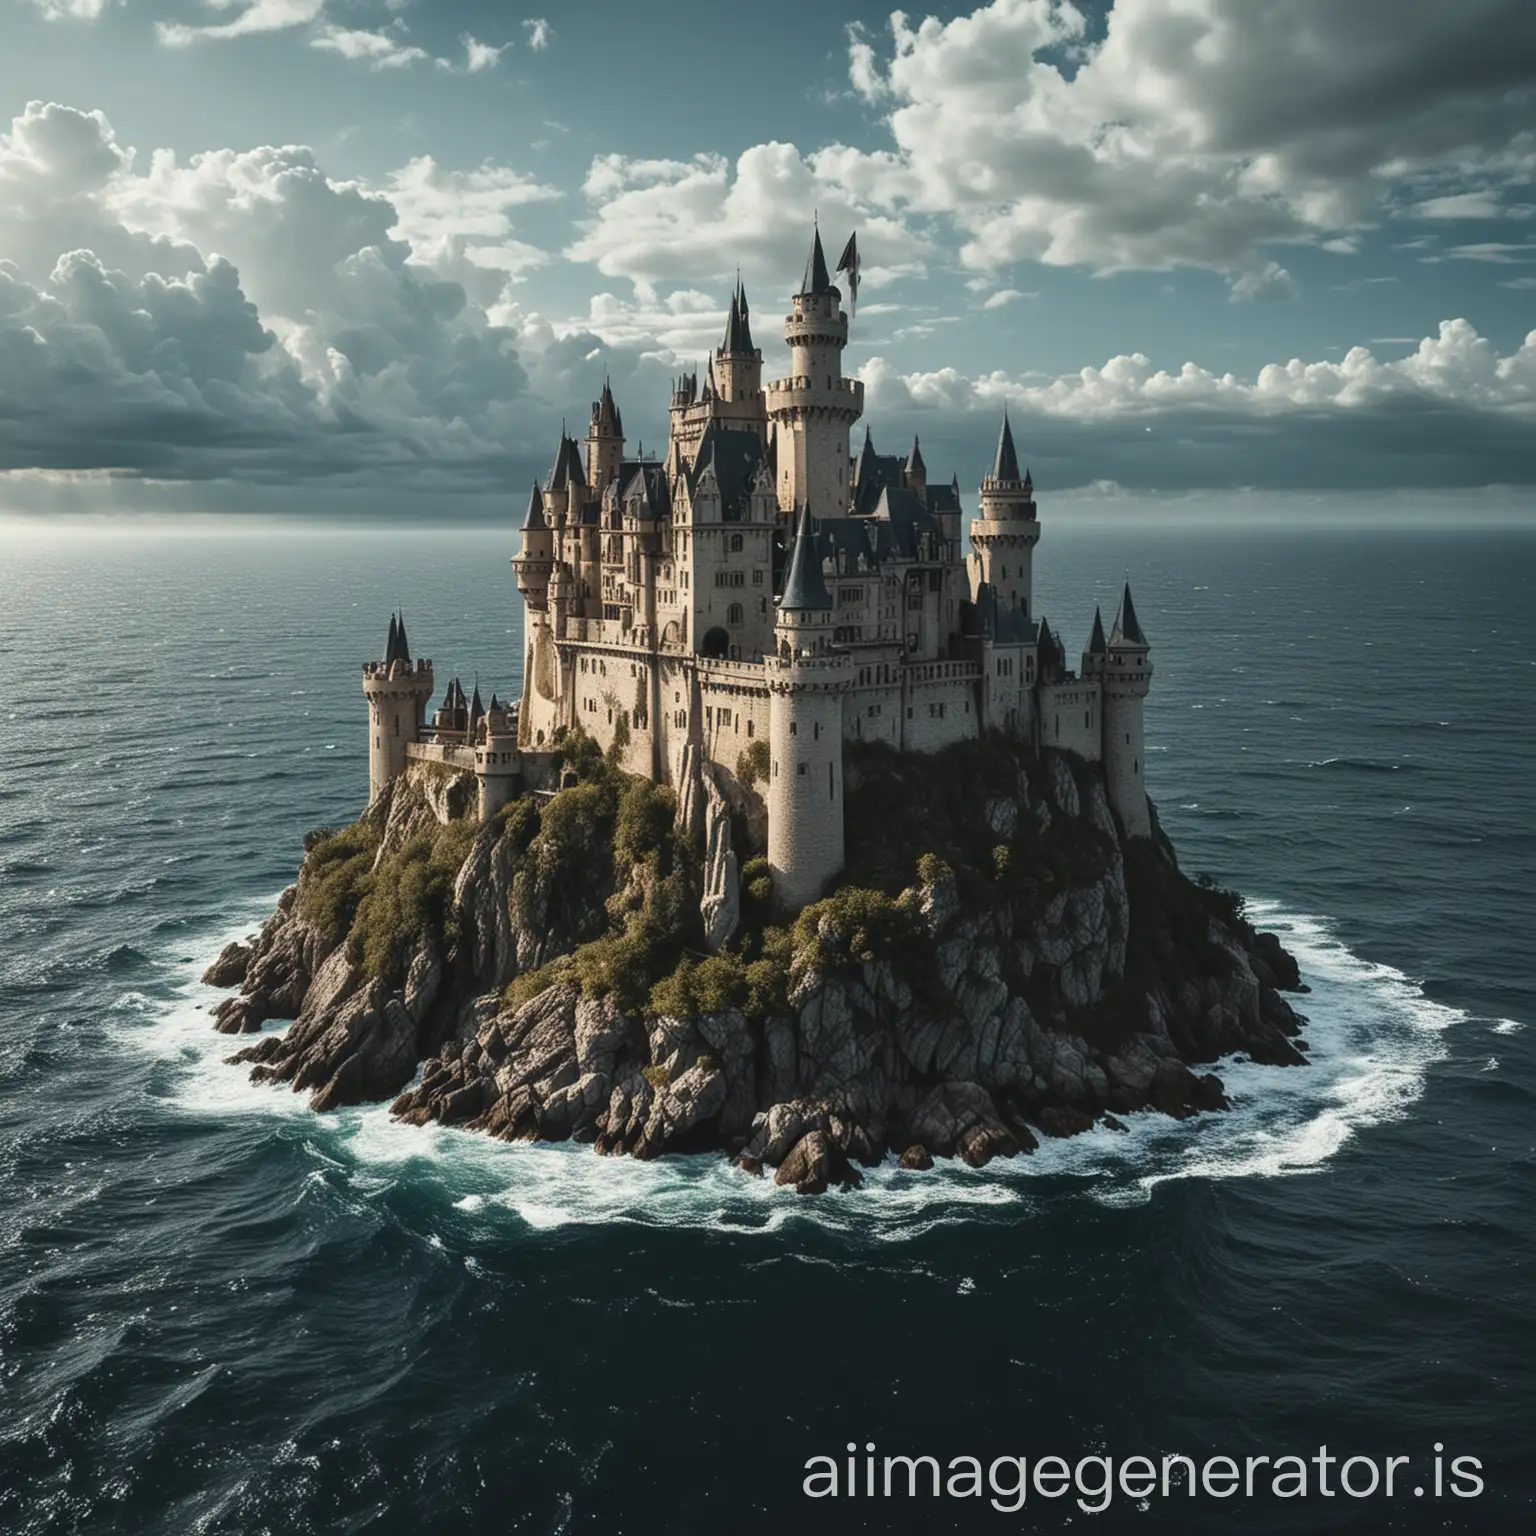 Castle in middle of ocean